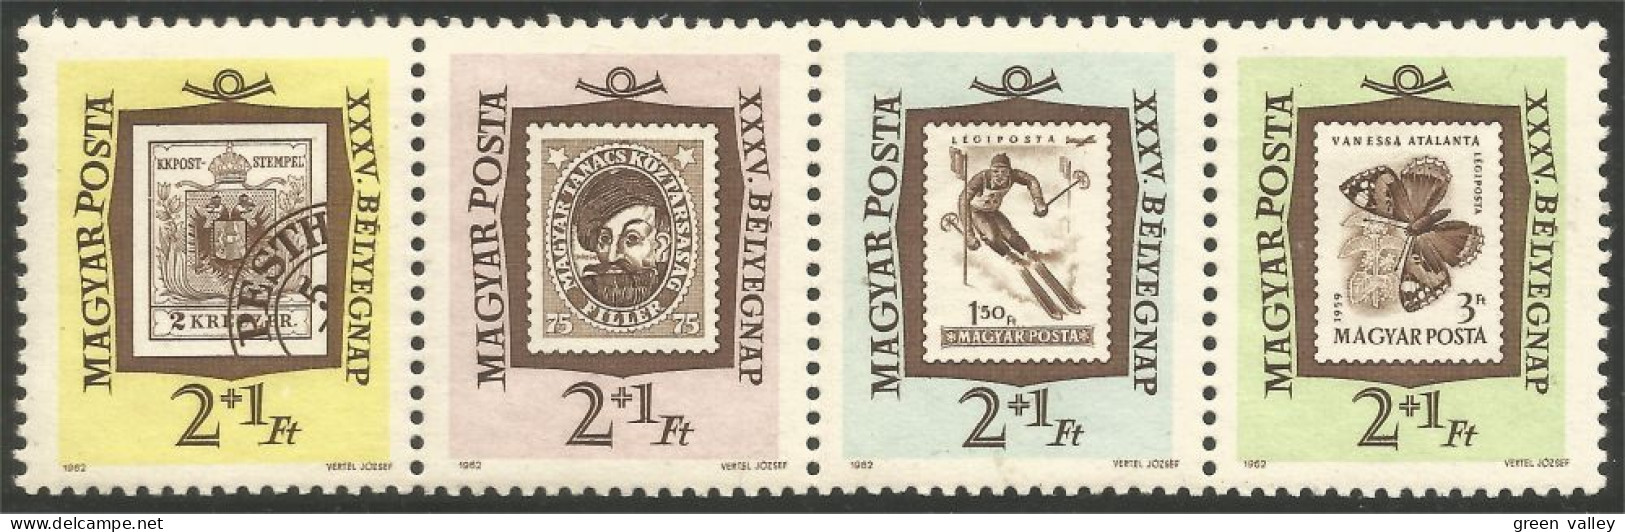 494 Hongrie 1962 Stamp Day Se-tenant Strip MNH ** Neuf SC (HON-341) - Giornata Del Francobollo